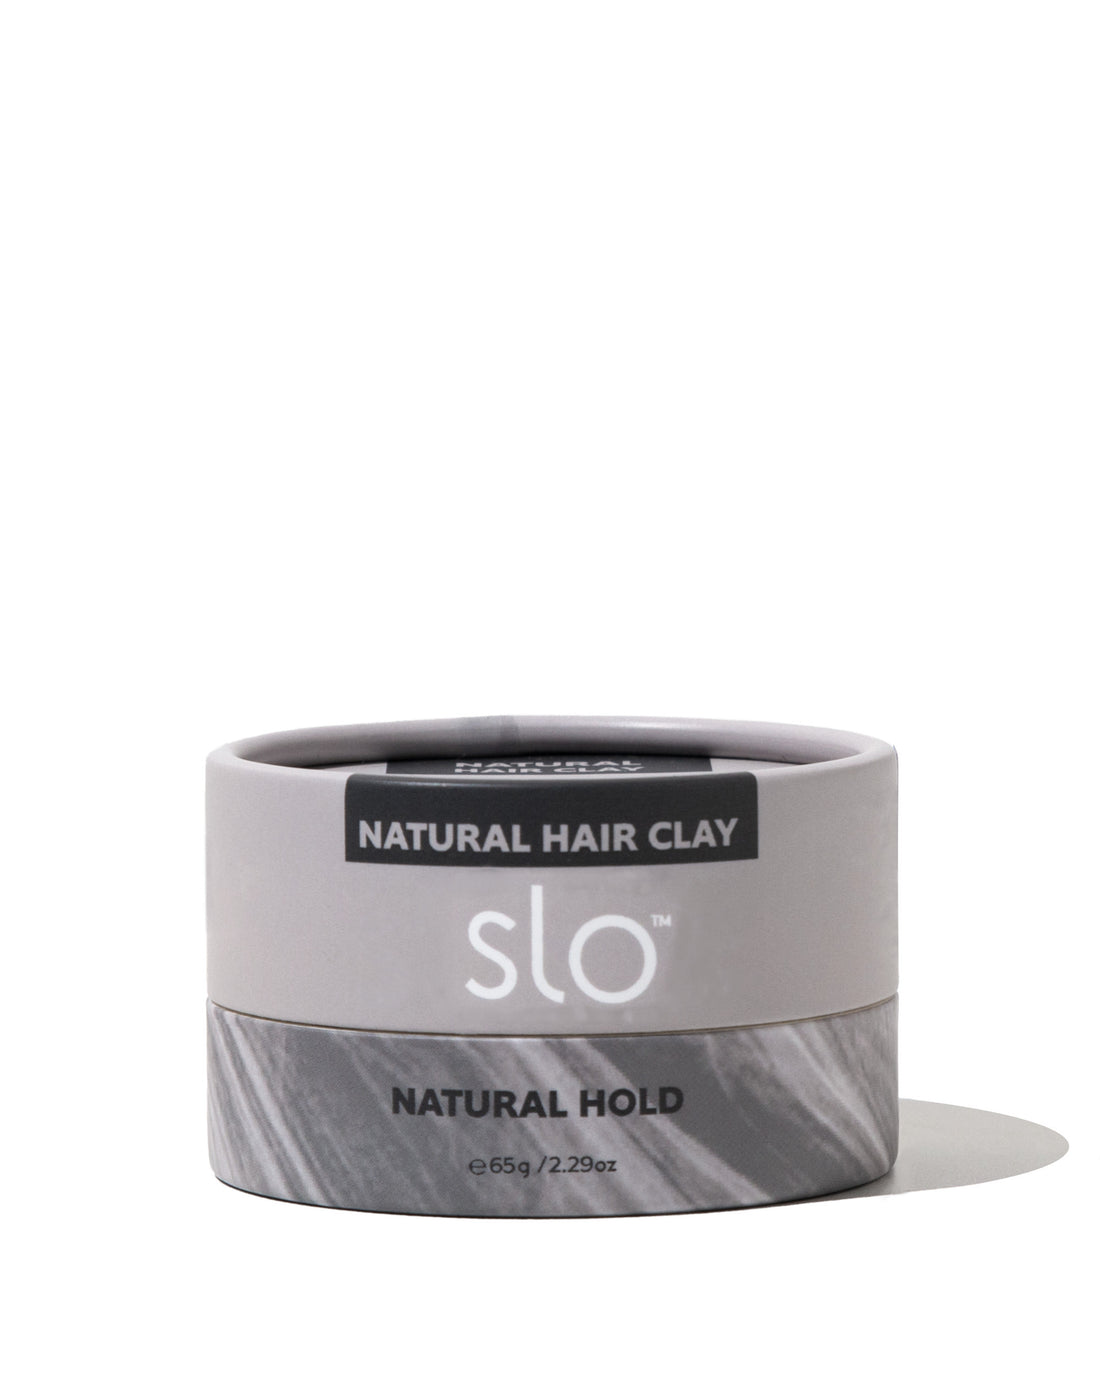 Natural Hair Clay - Natural Hold